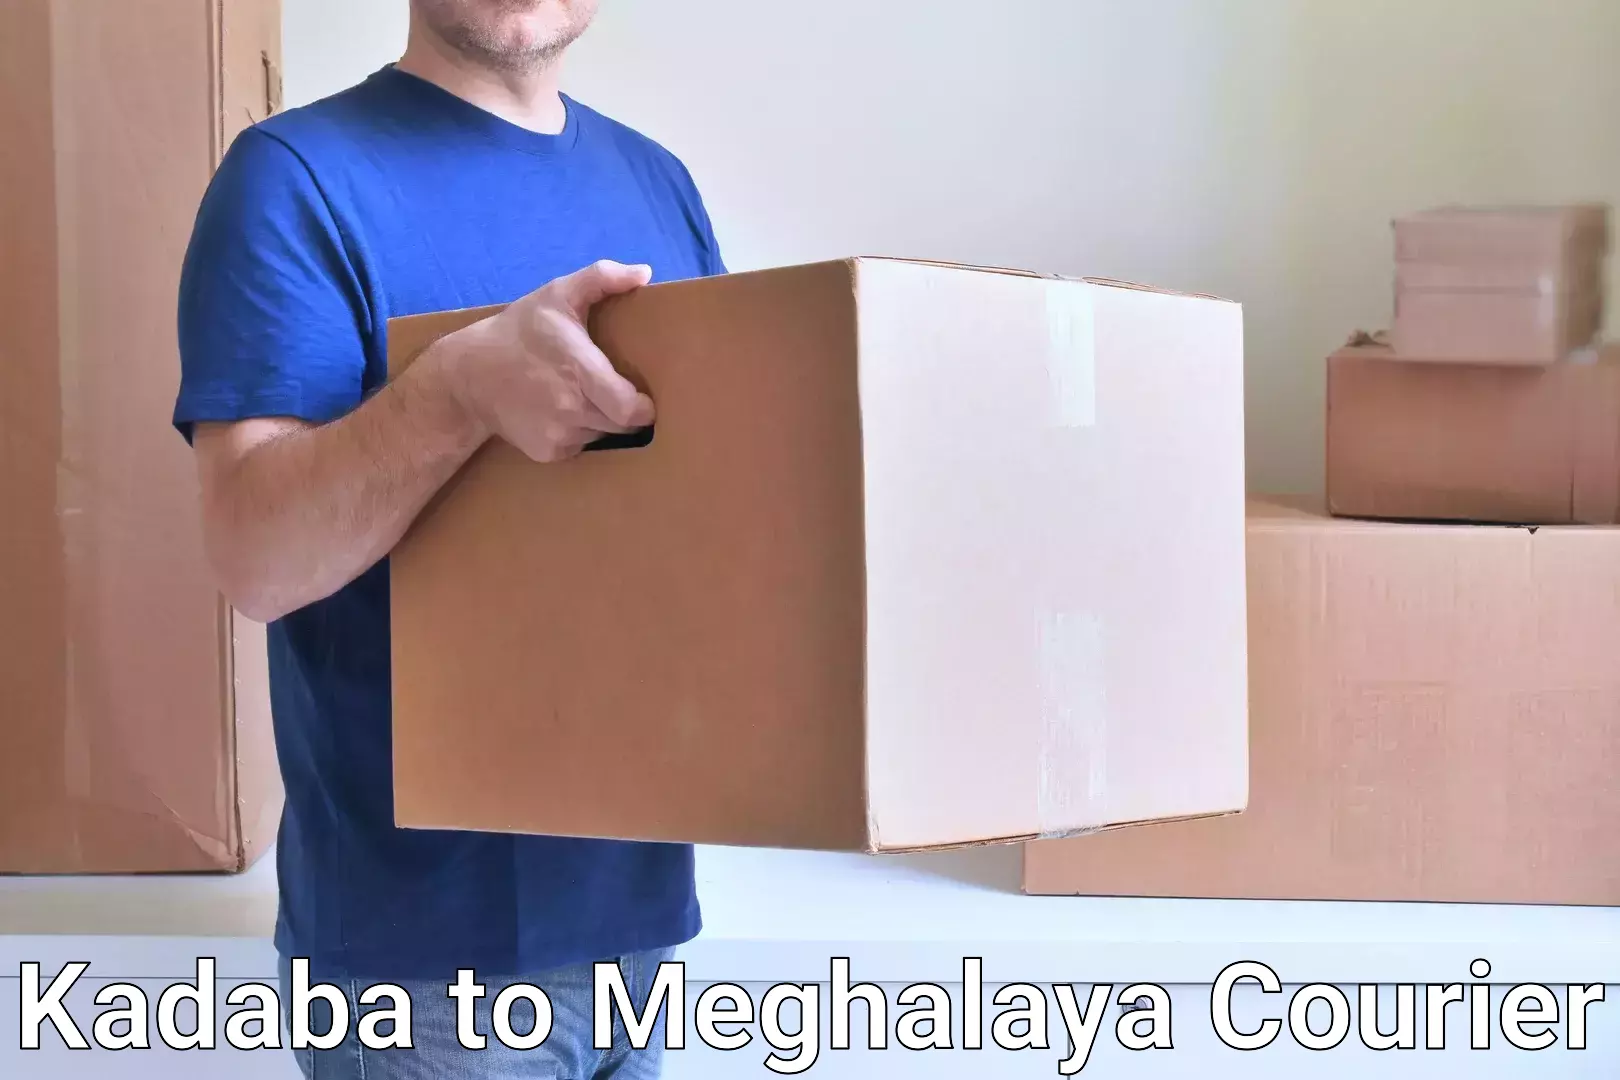 Comprehensive shipping services Kadaba to Meghalaya